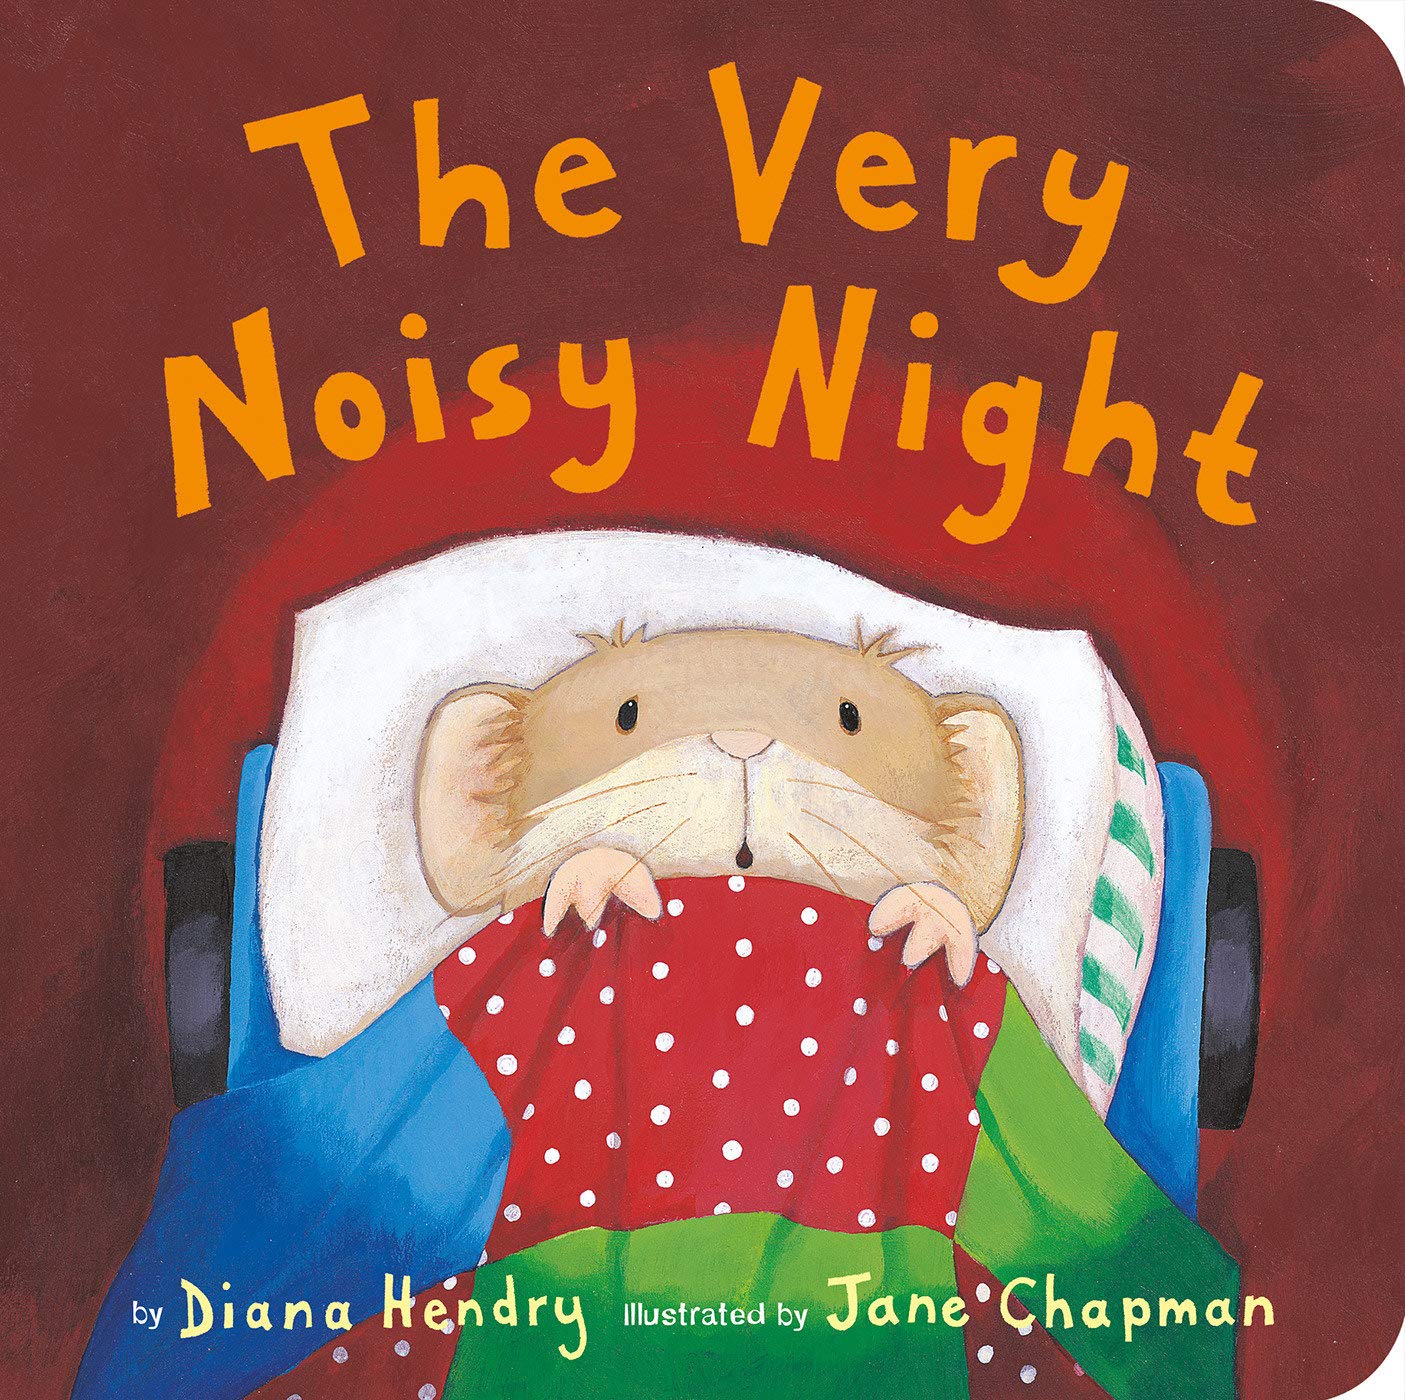 IMG : The Very Noisy Night